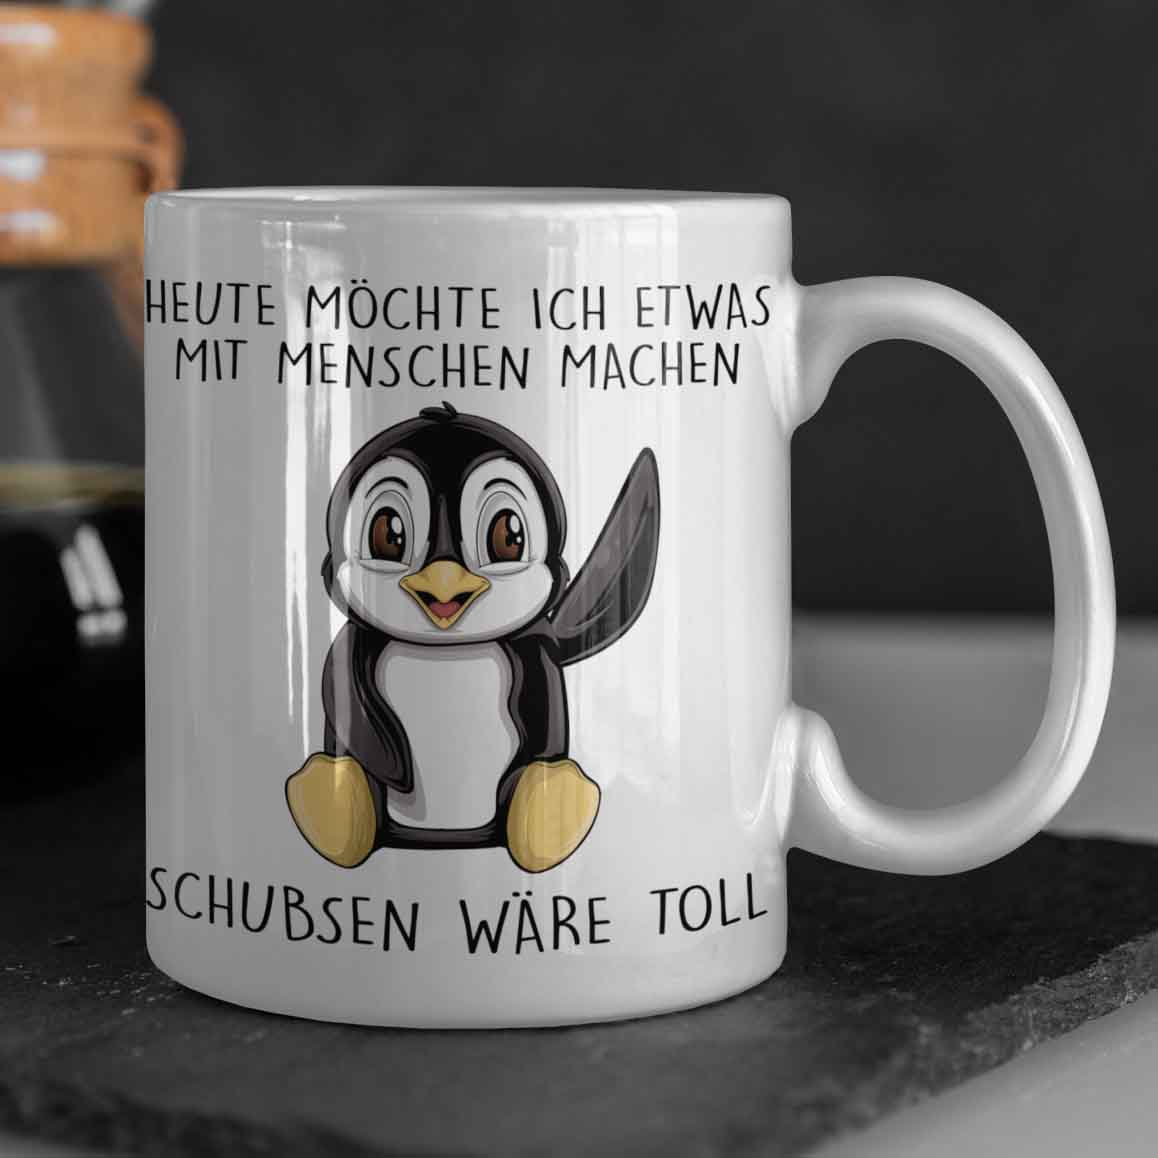 Pinguin-Tasse, Pinguin-Liebhaber-Geschenk, lustige Pinguin-Tasse, keine  Gedanken nur Pinguin, Pinguin-Geschenk, niedliche Pinguin-Tasse, Pinguin-Enthusiast  -  Schweiz